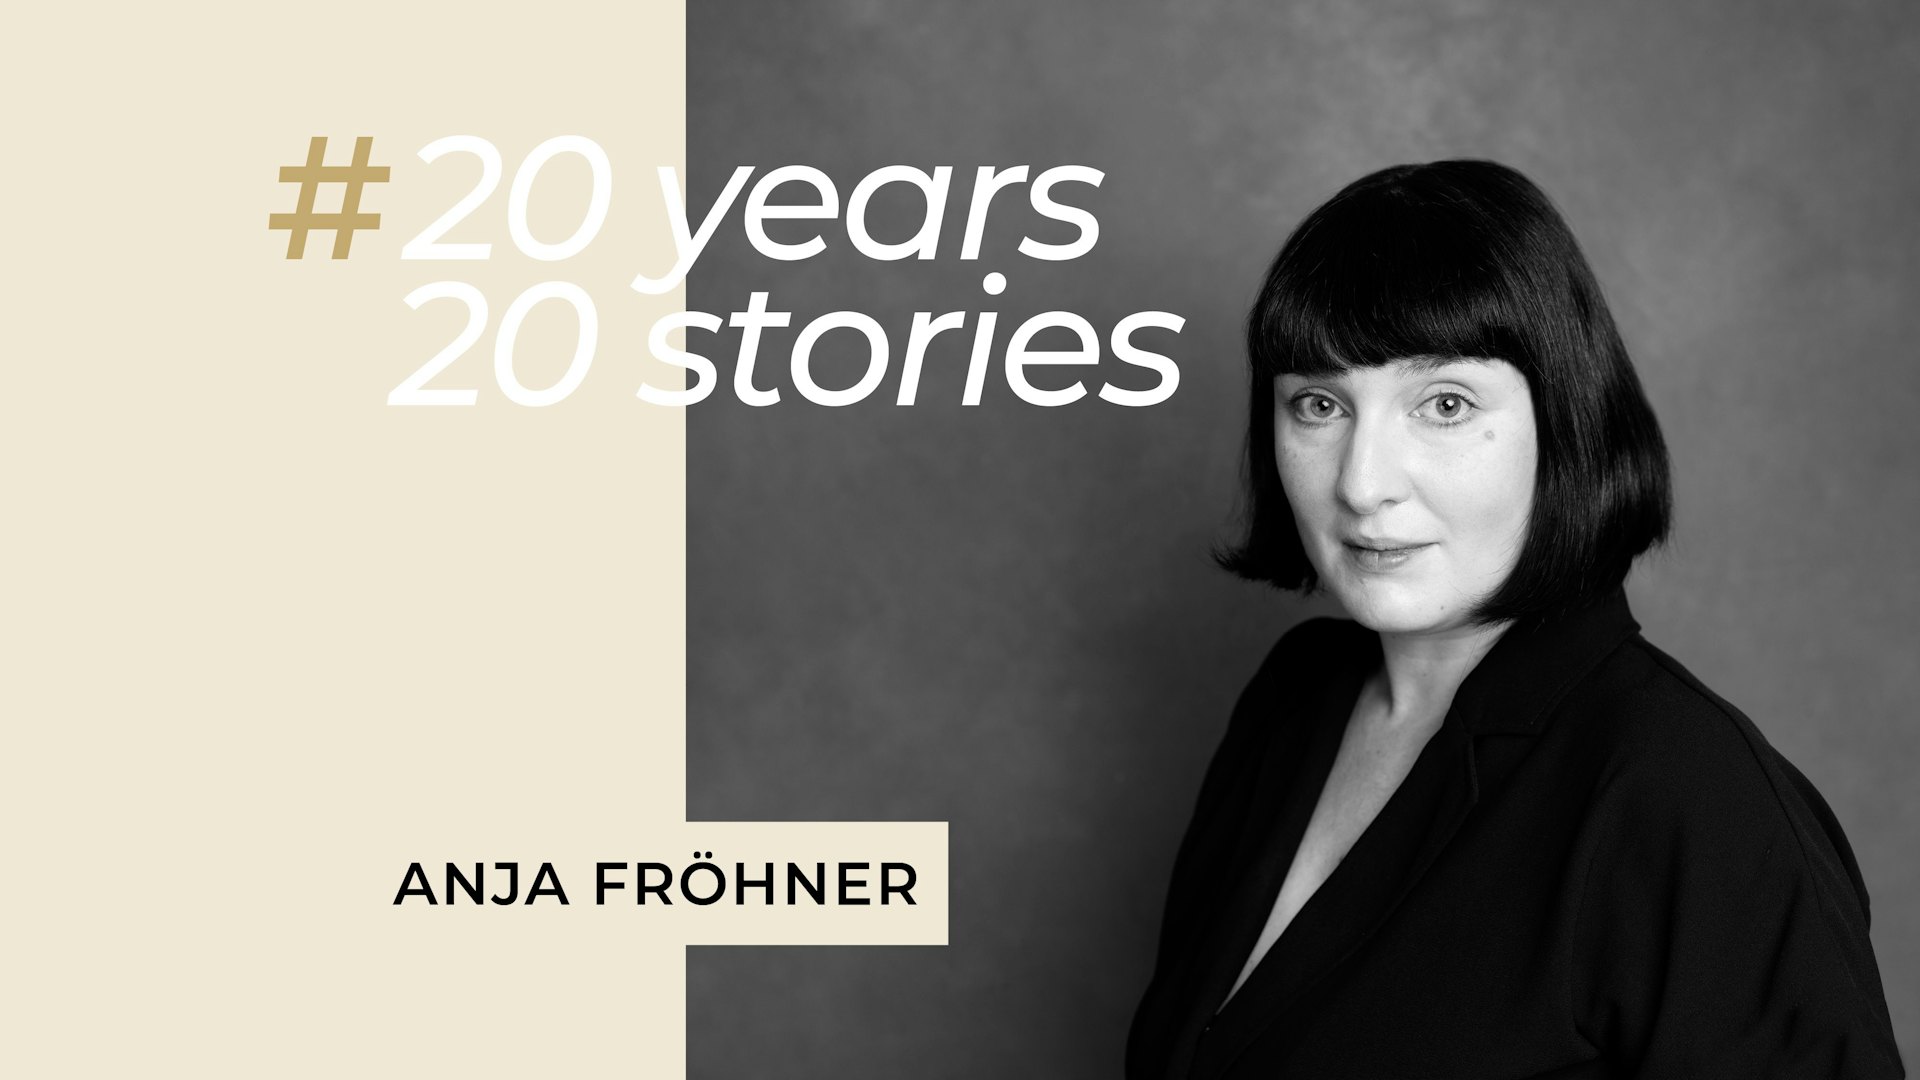 20 years, 20 stories: Anja Fröhner